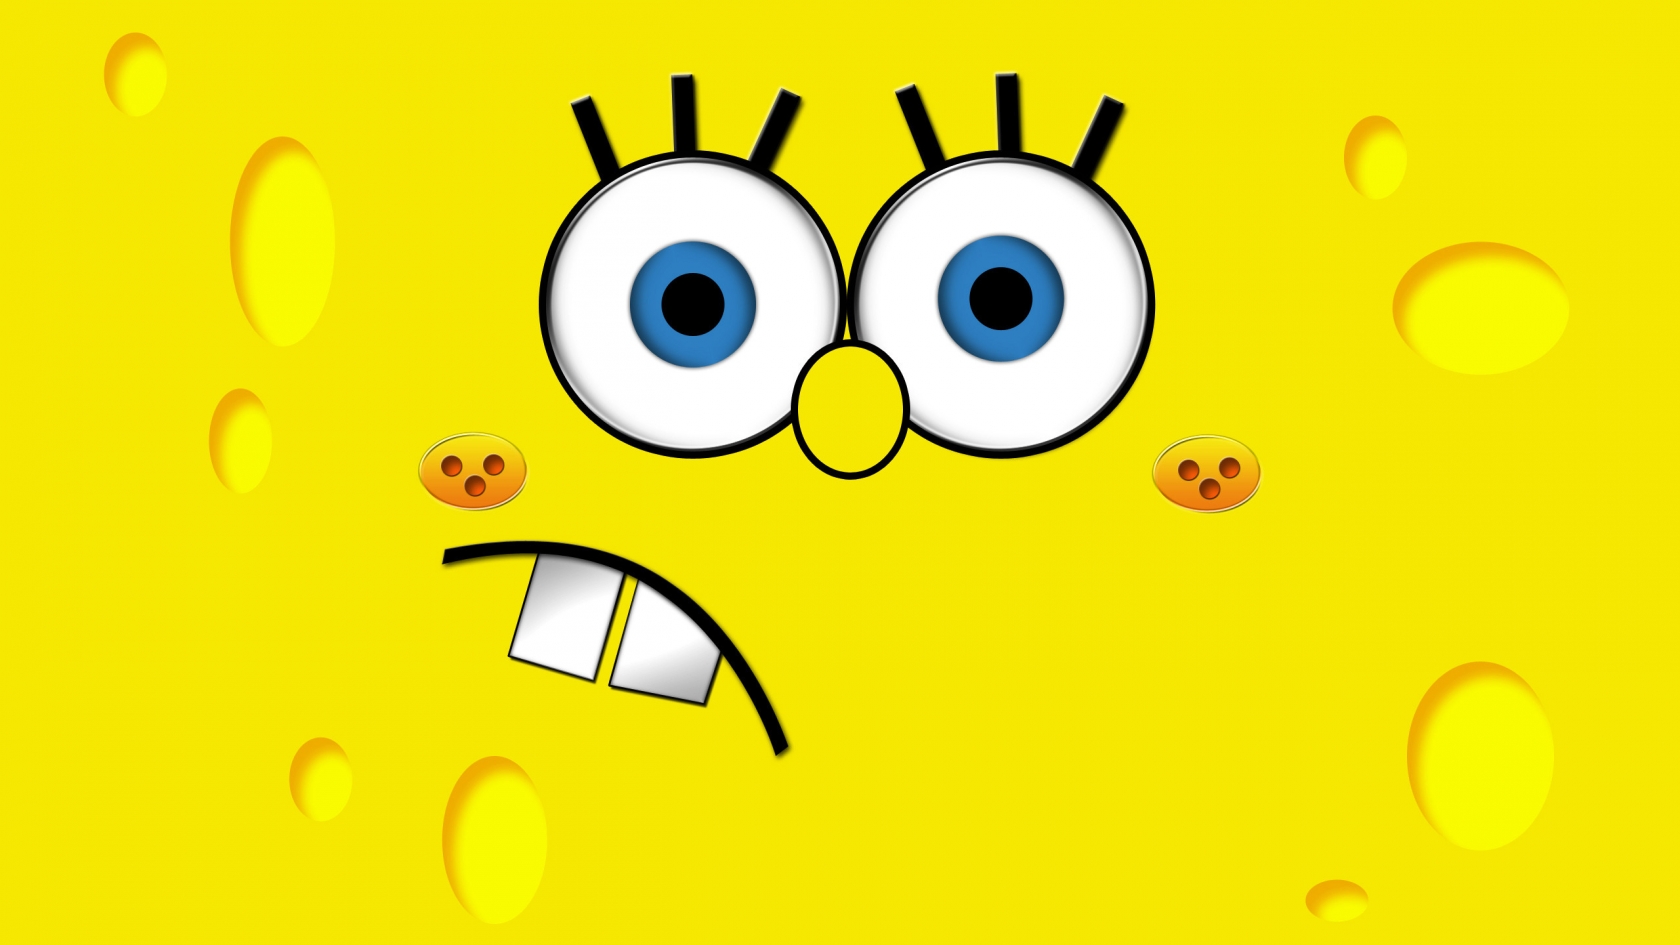 SpongeBob for 1680 x 945 HDTV resolution